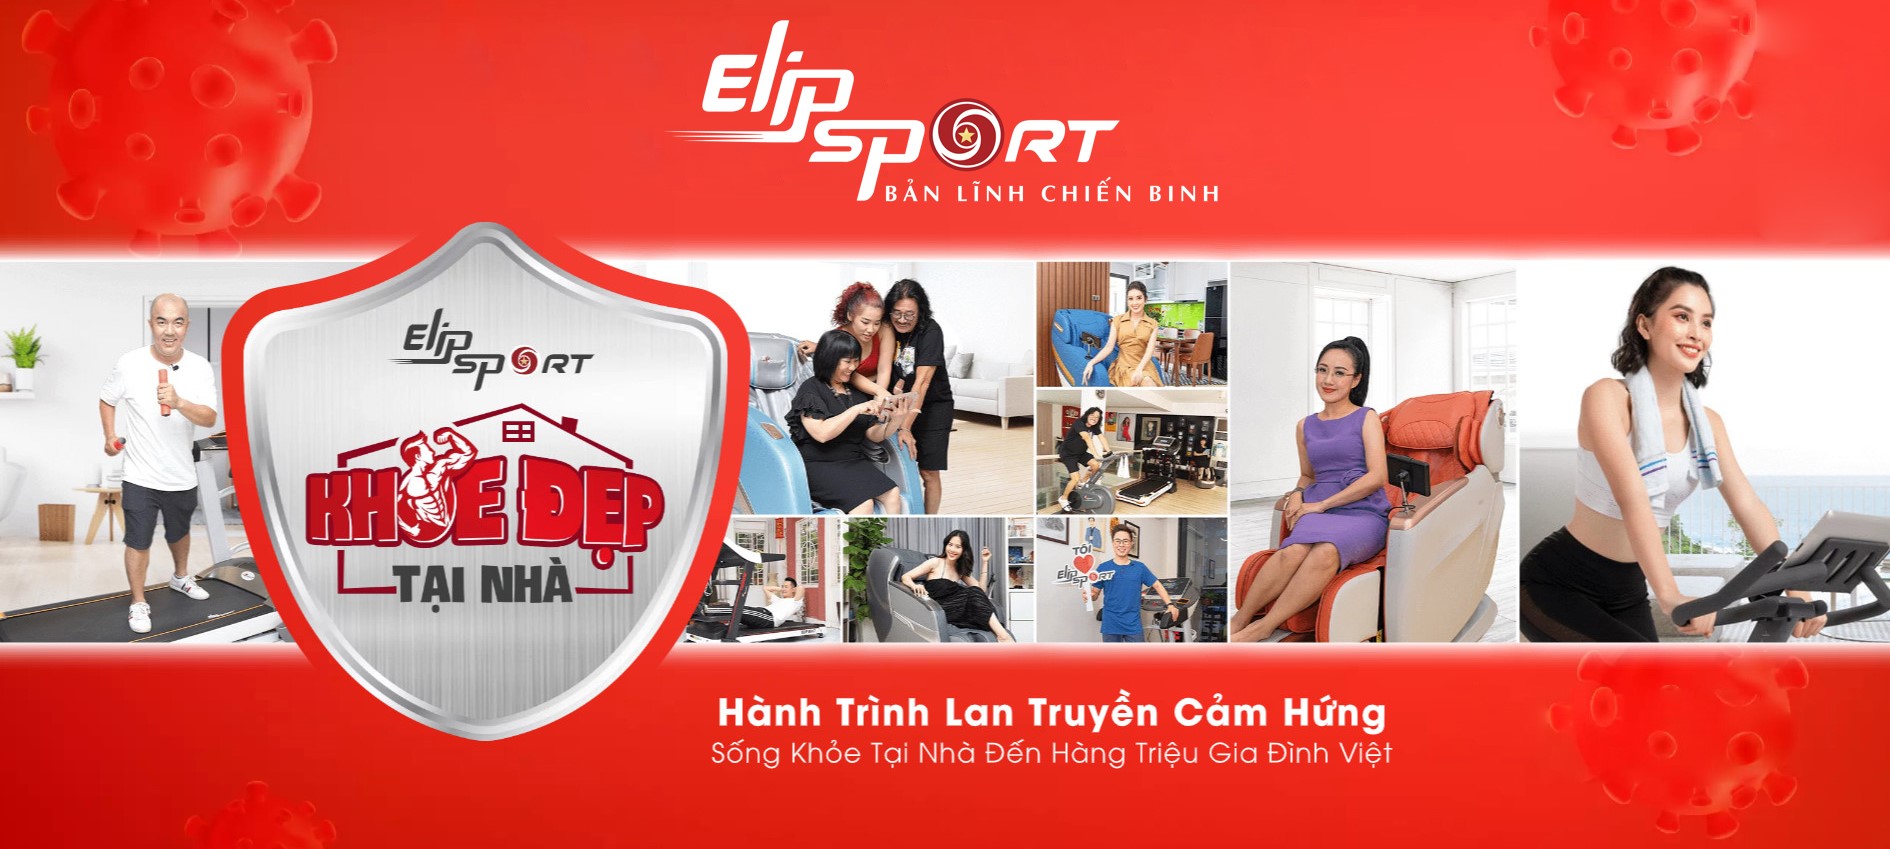 Elipsport: Thương hiệu 15 năm uy tín, 15 triệu người Việt tin dùng - ảnh 1